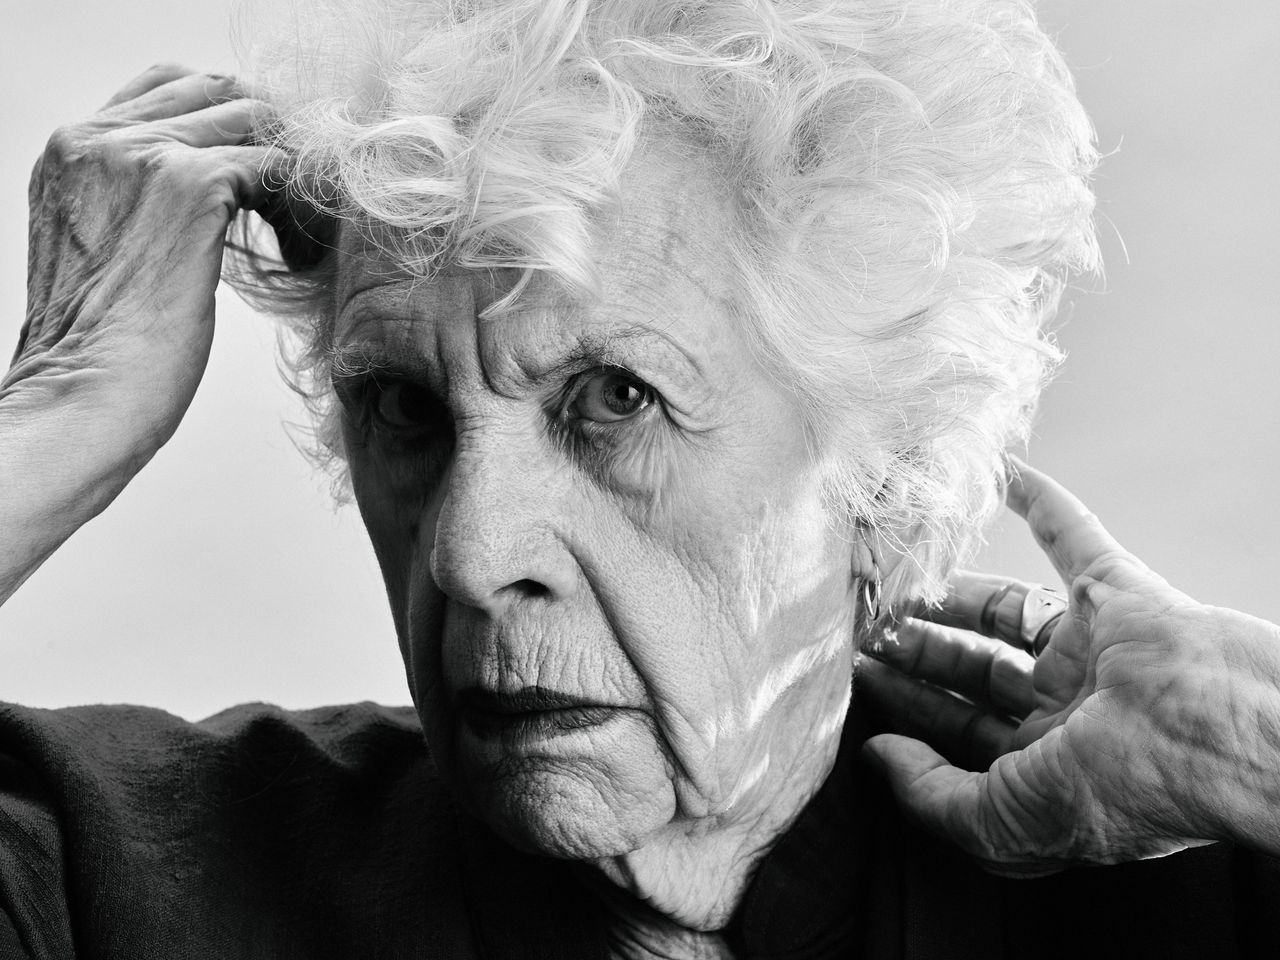 Actrice Annemarie Prins (91) speelt haar beste voorstelling ooit, vindt ze zelf. Ook al is ze aan het ‘afbrokkelen’ 